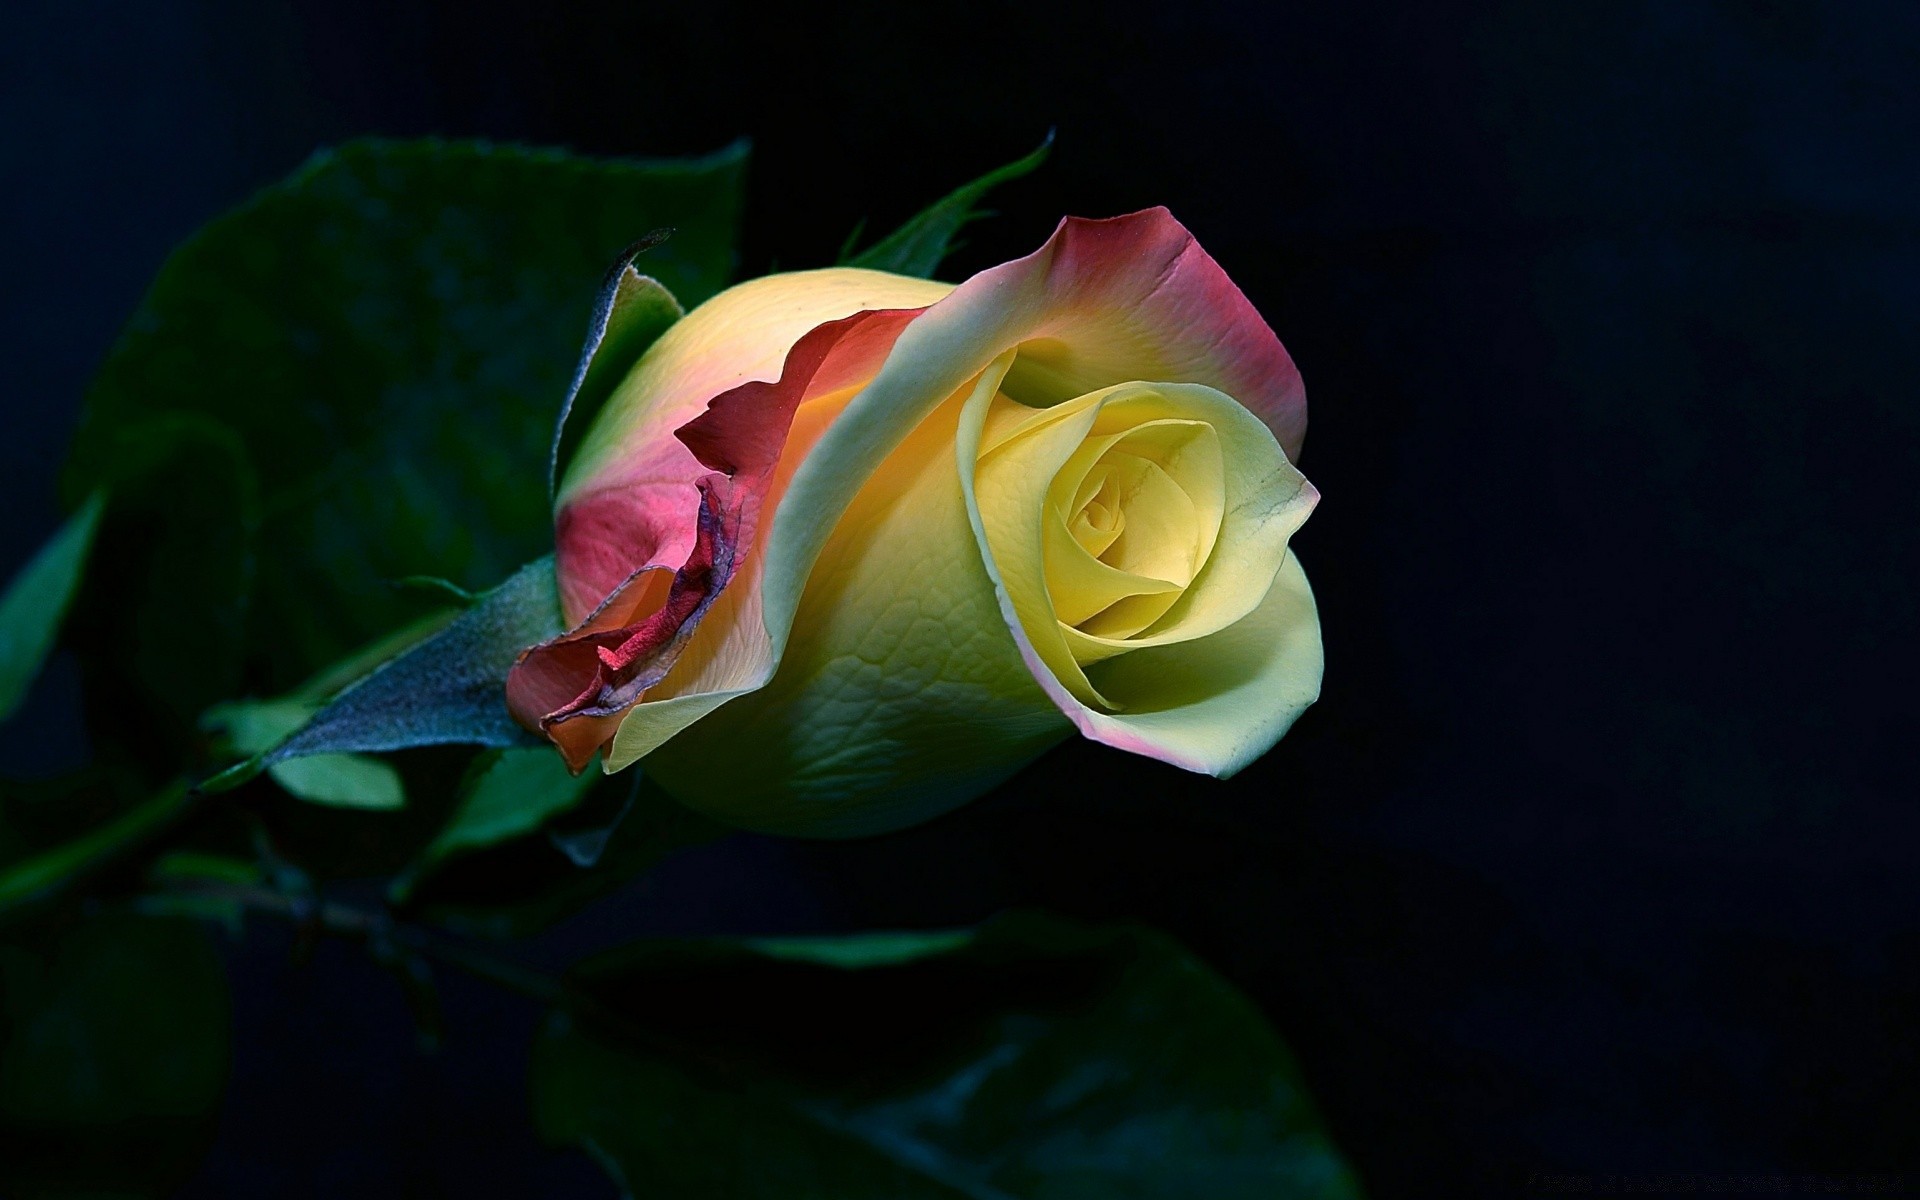 черное цветок лепесток роза природа флора красивые цвет блюминг цветочные лист сад романтика романтический любовь рабочего стола яркий подарок лето нежный